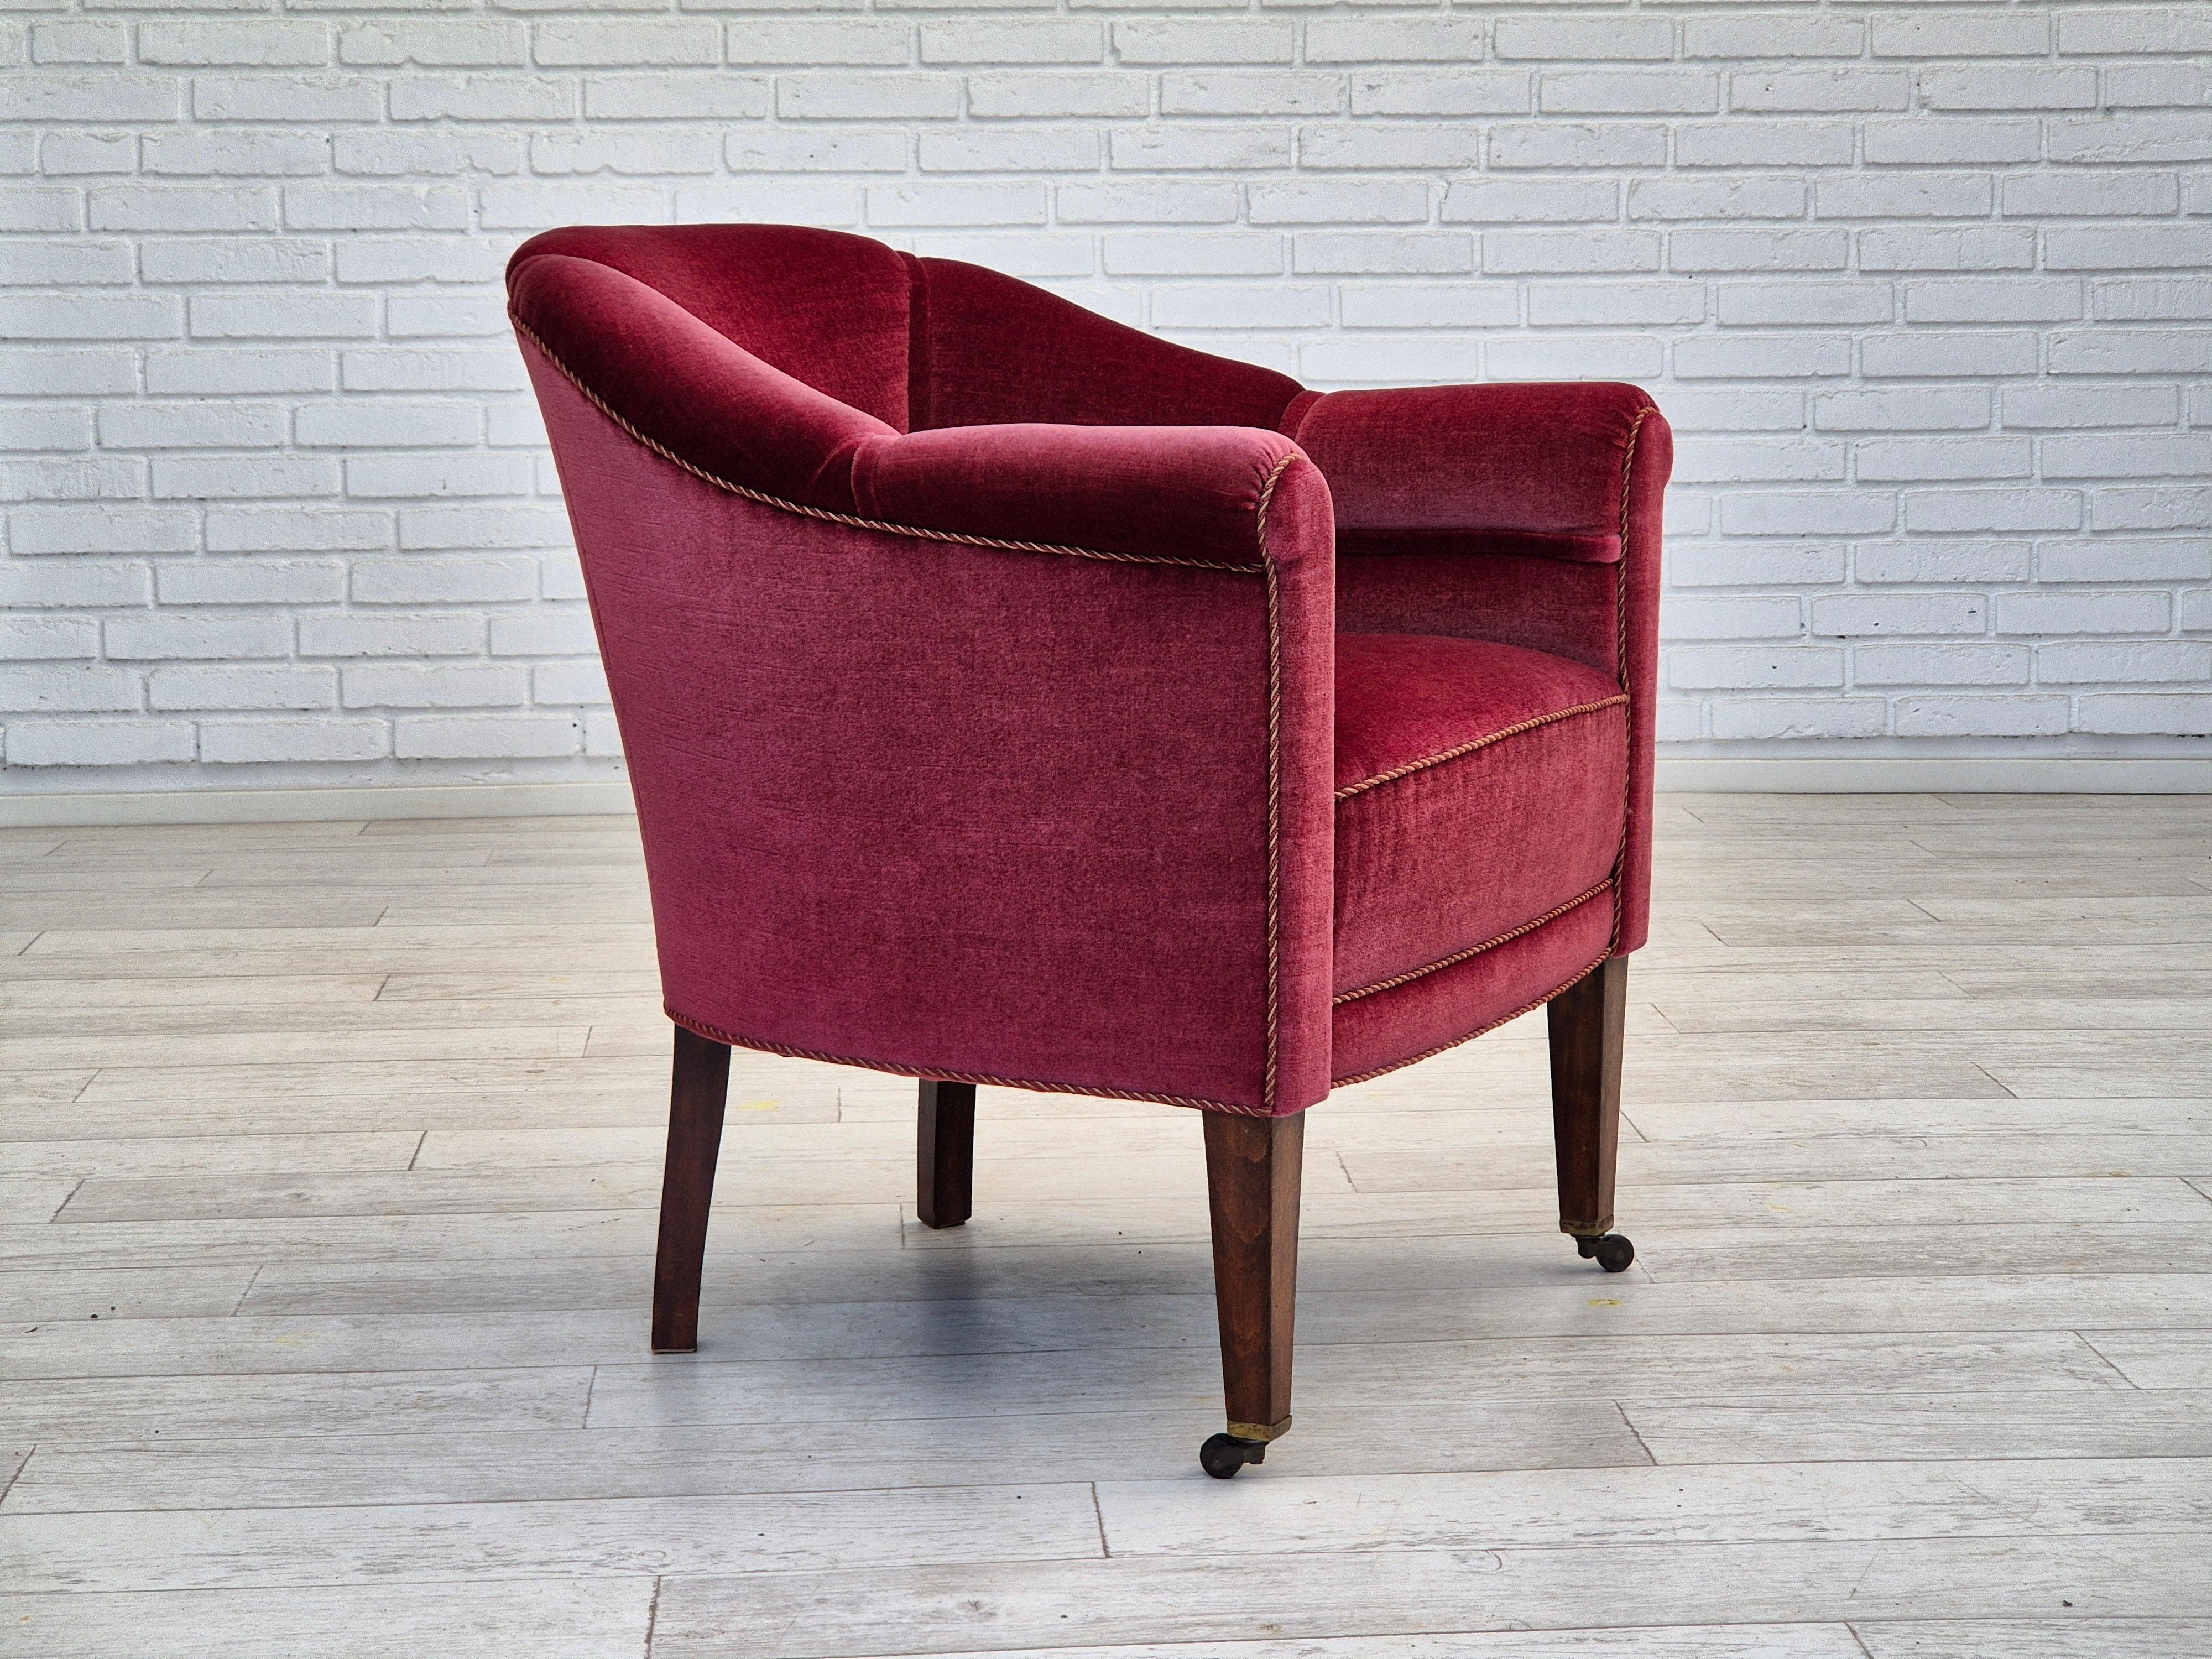 1950er, dänischer Sessel in sehr gutem Originalzustand: keine Gerüche und keine Flecken. Roter Möbelvelours, Beine aus Eschenholz mit Messingrädern an den Vorderbeinen. Federn im Sitz. Hergestellt von einem dänischen Möbelhersteller in den 1950-55er